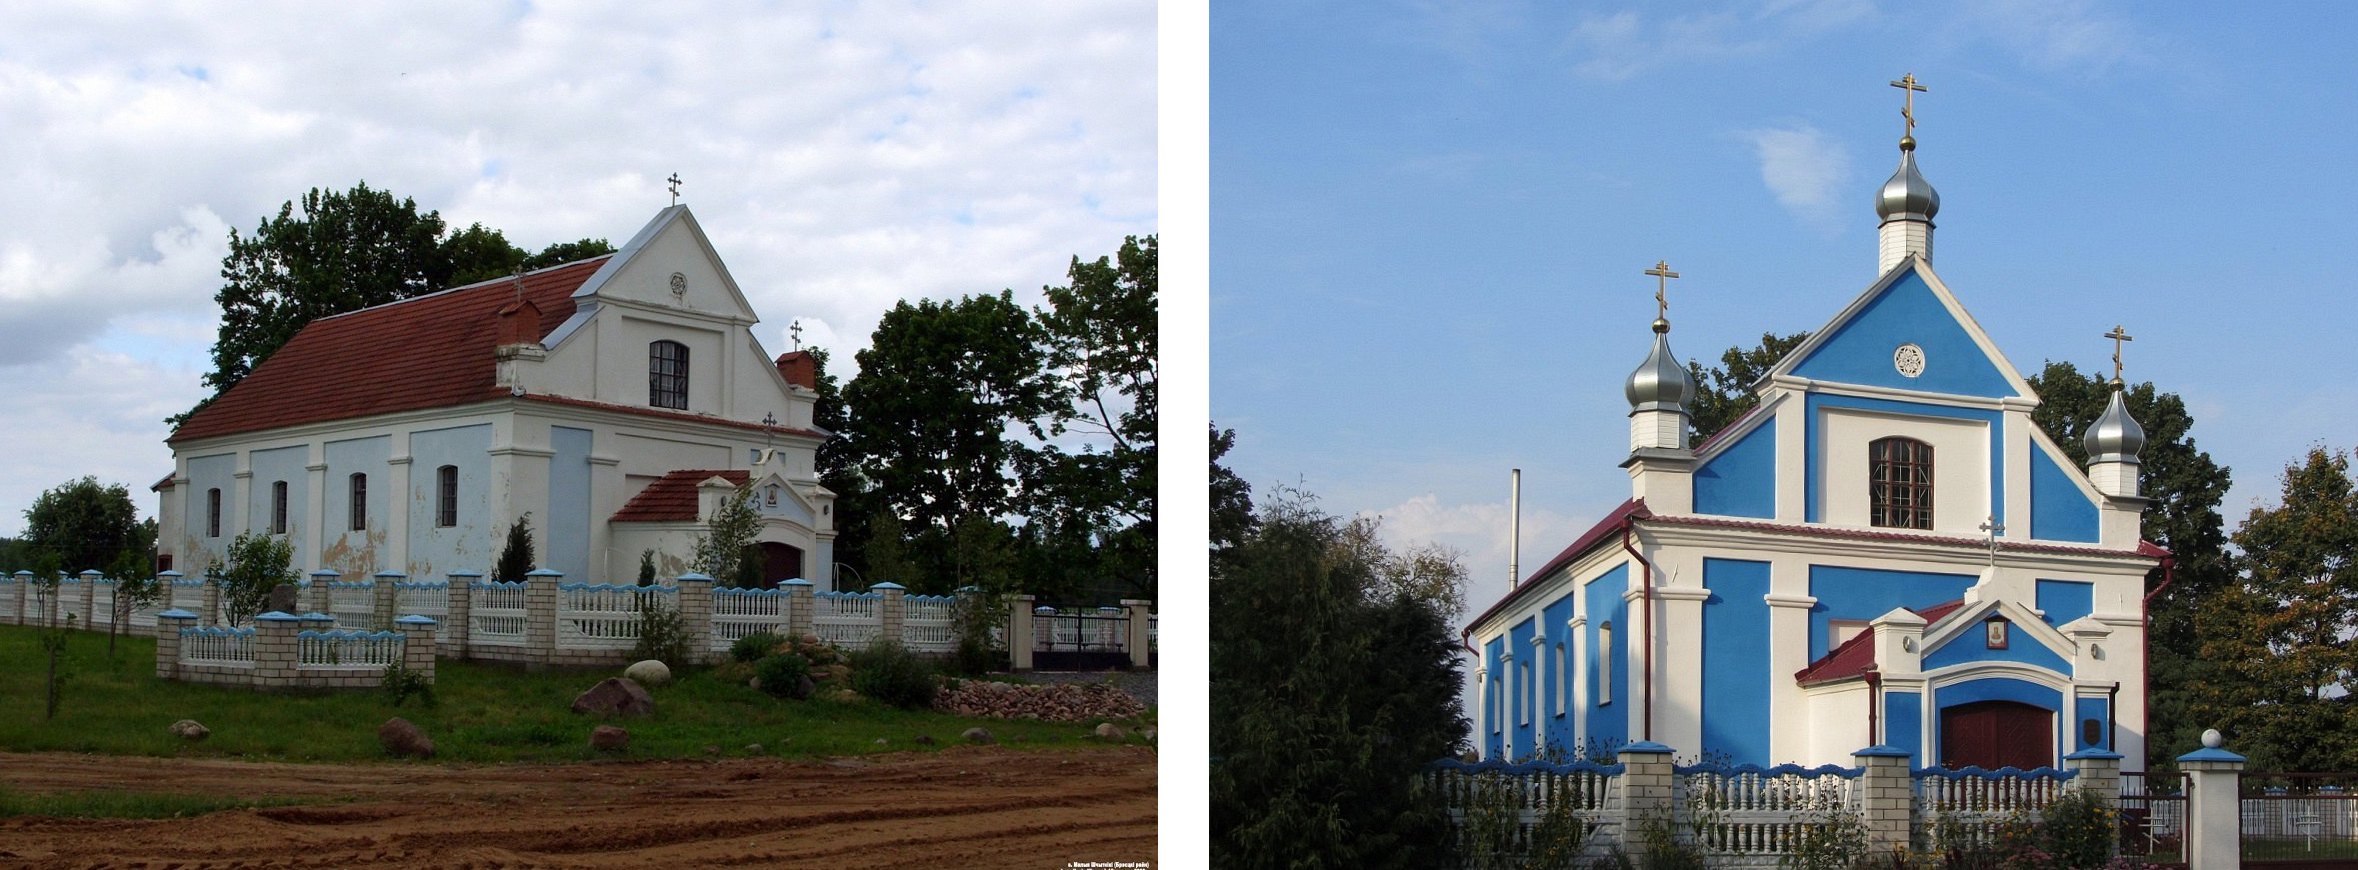 Луковица как опухоль: церковь в Пинске и ещё пять храмов после “реконструкции”